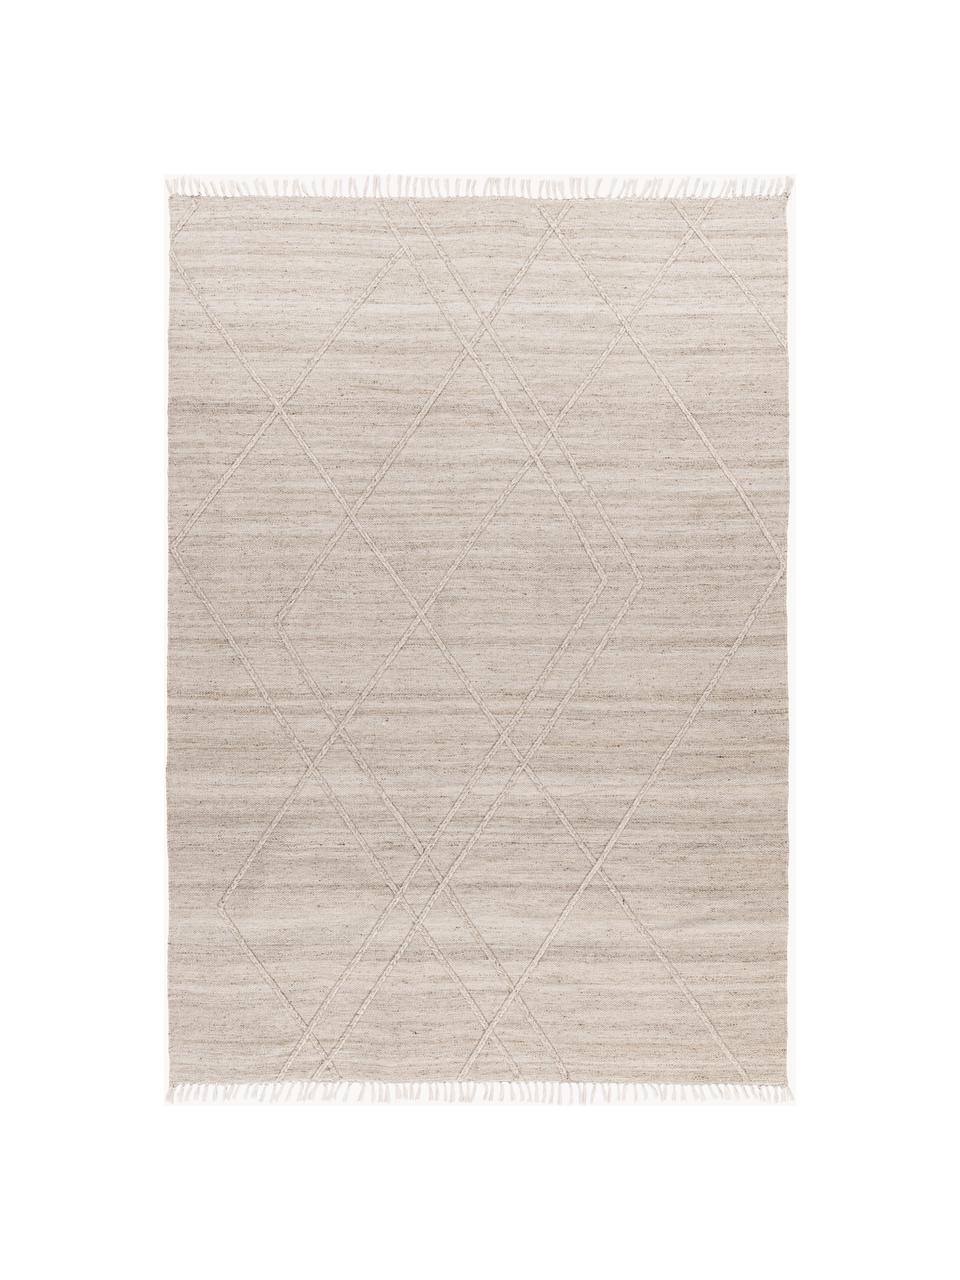 Tappeto da interno-esterno tessuto a mano con frange ed effetto in rilievo Dakar, 100% polietilene, Beige chiaro, Larg. 80 x Lung. 150 cm (taglia XS)